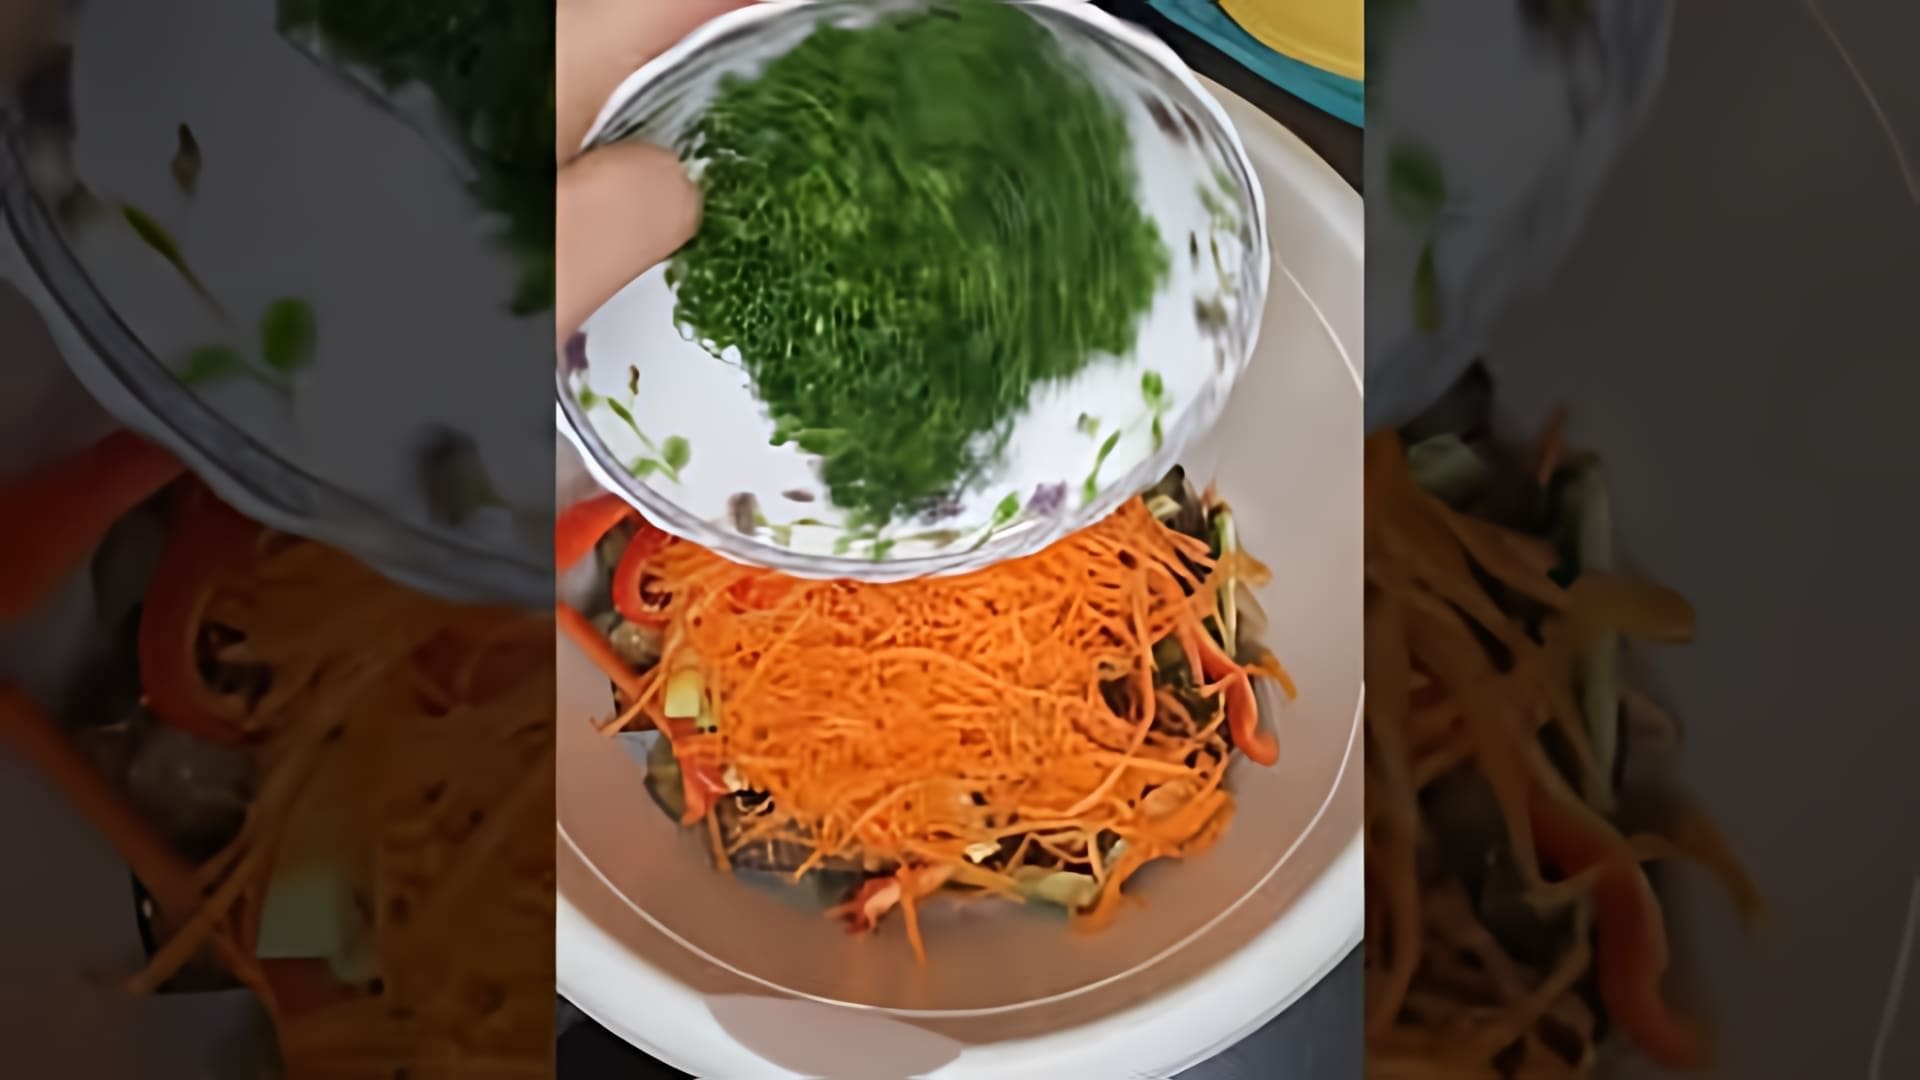 В этом видео демонстрируется рецепт приготовления салата из баклажанов по-корейски